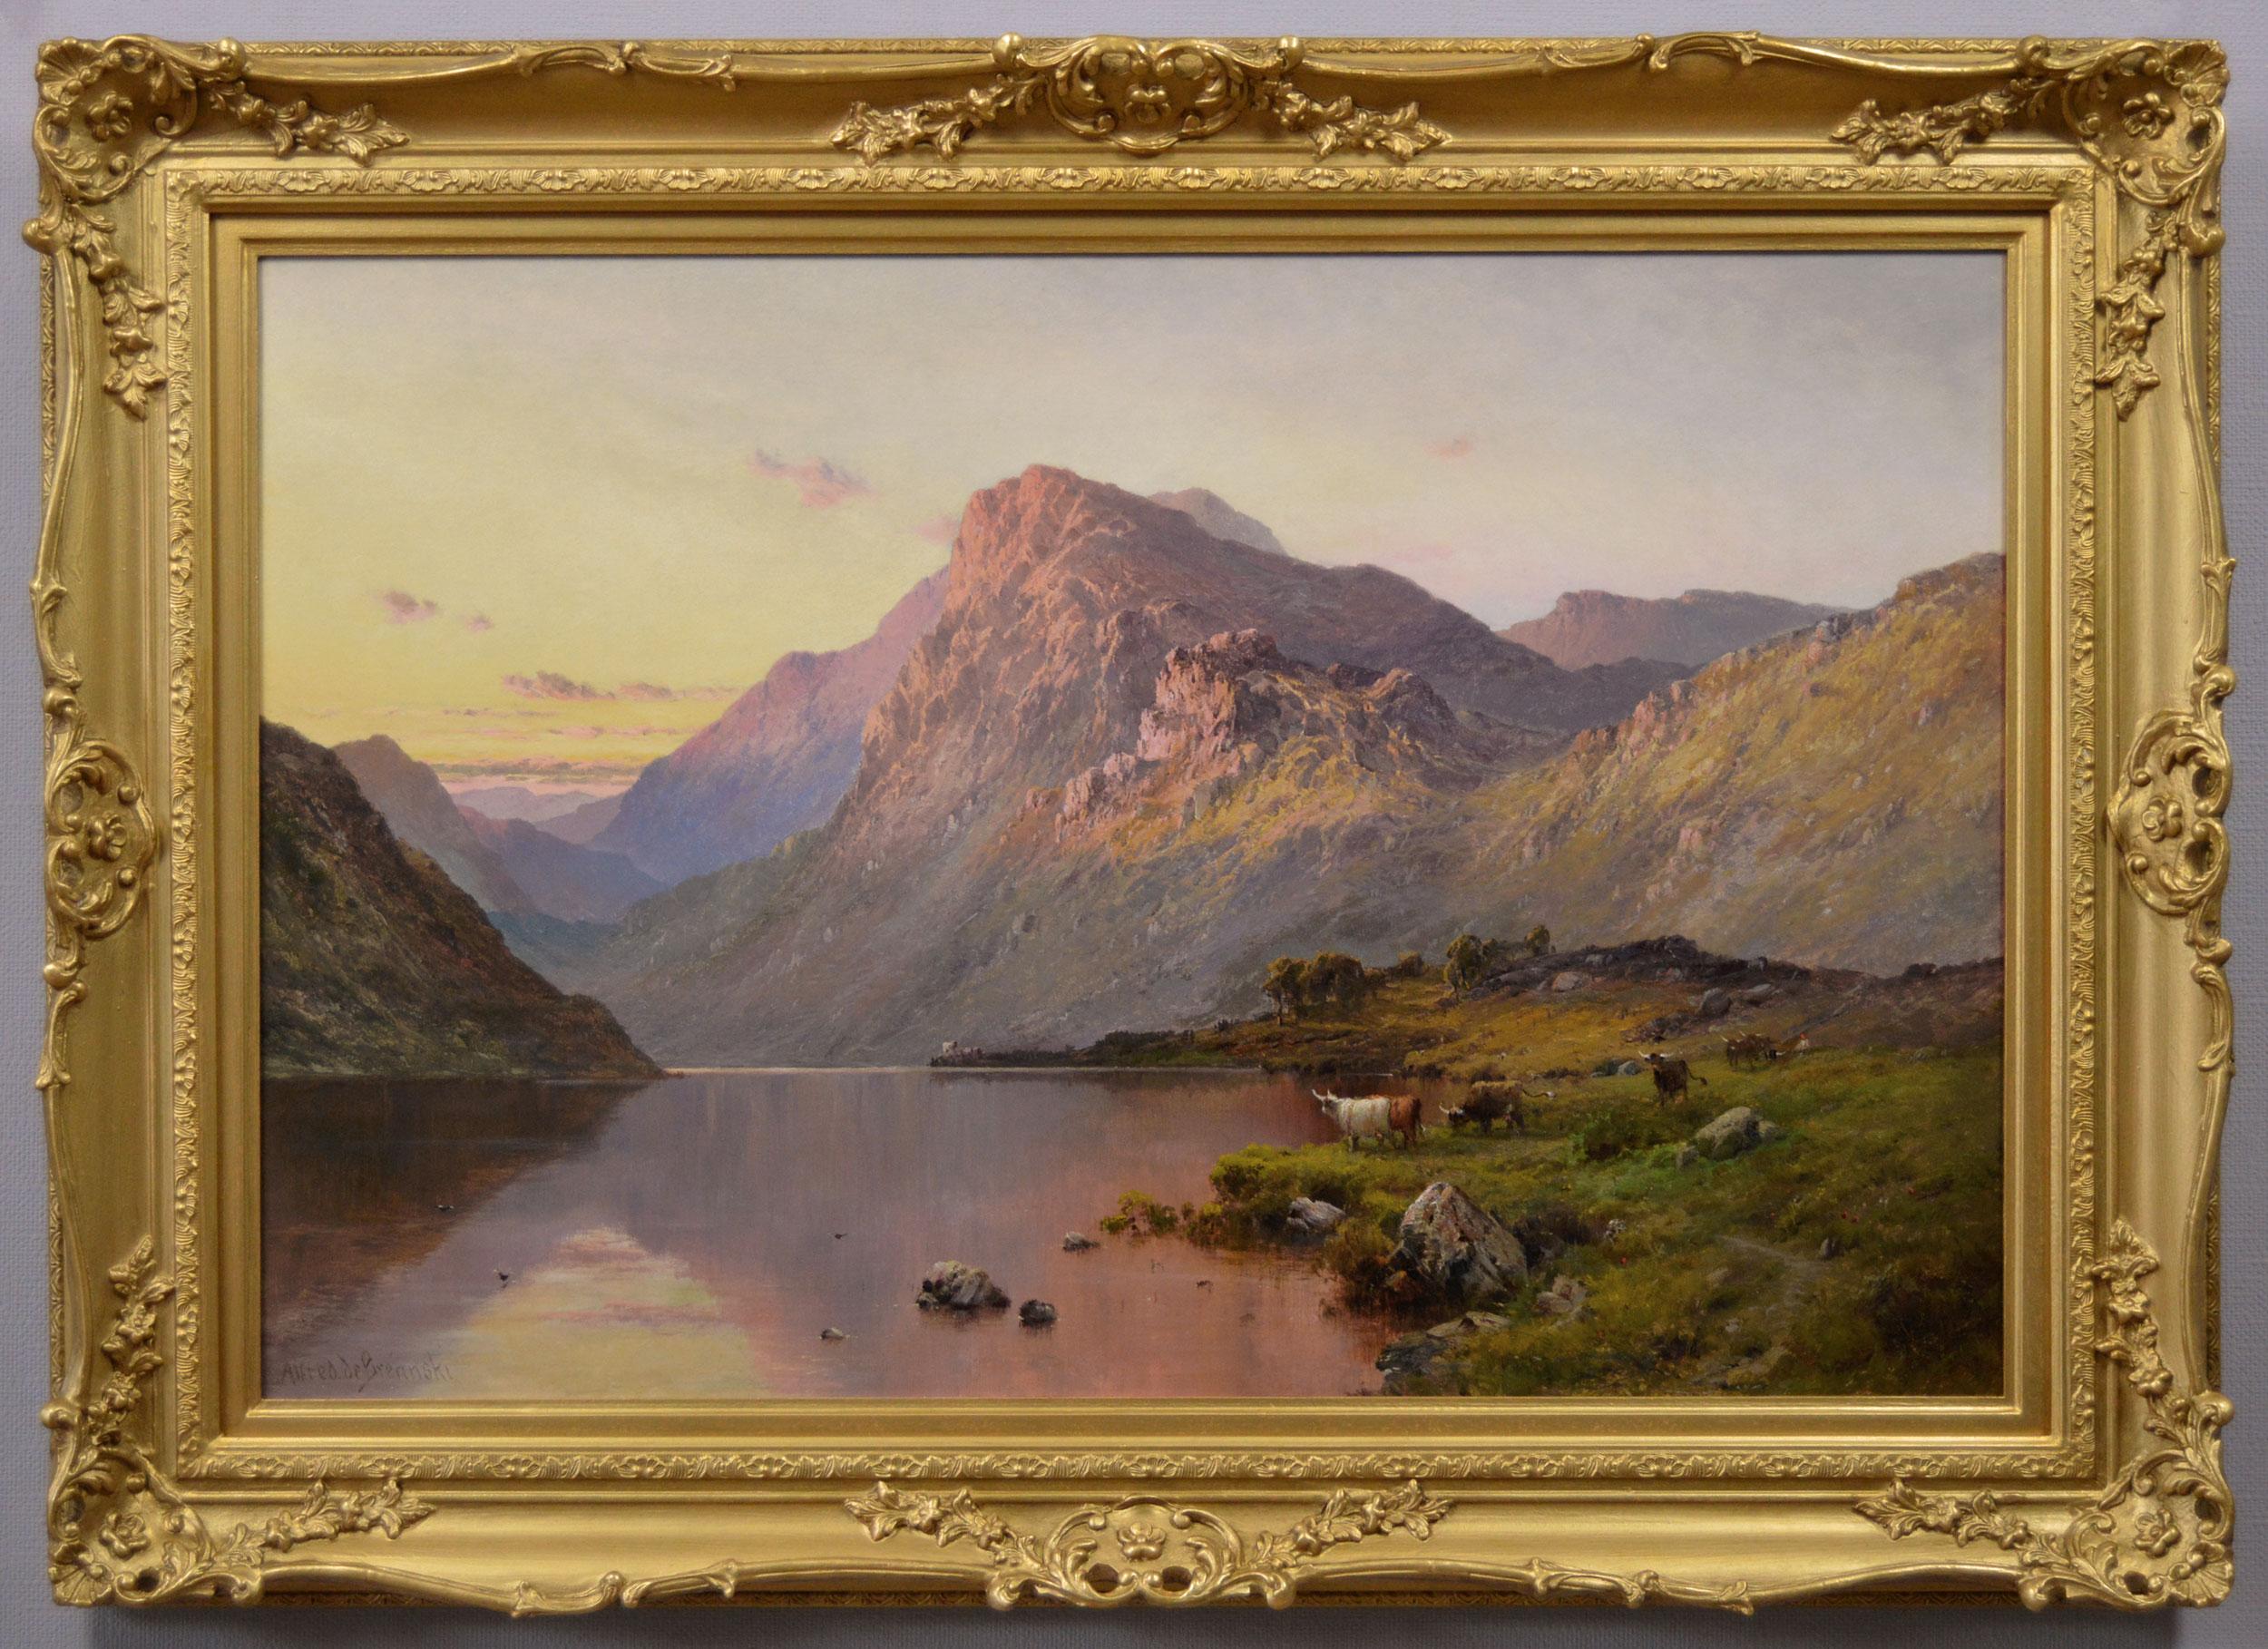 Peinture à l'huile des Highlands écossais du 19e siècle représentant le Loch Lubnaig